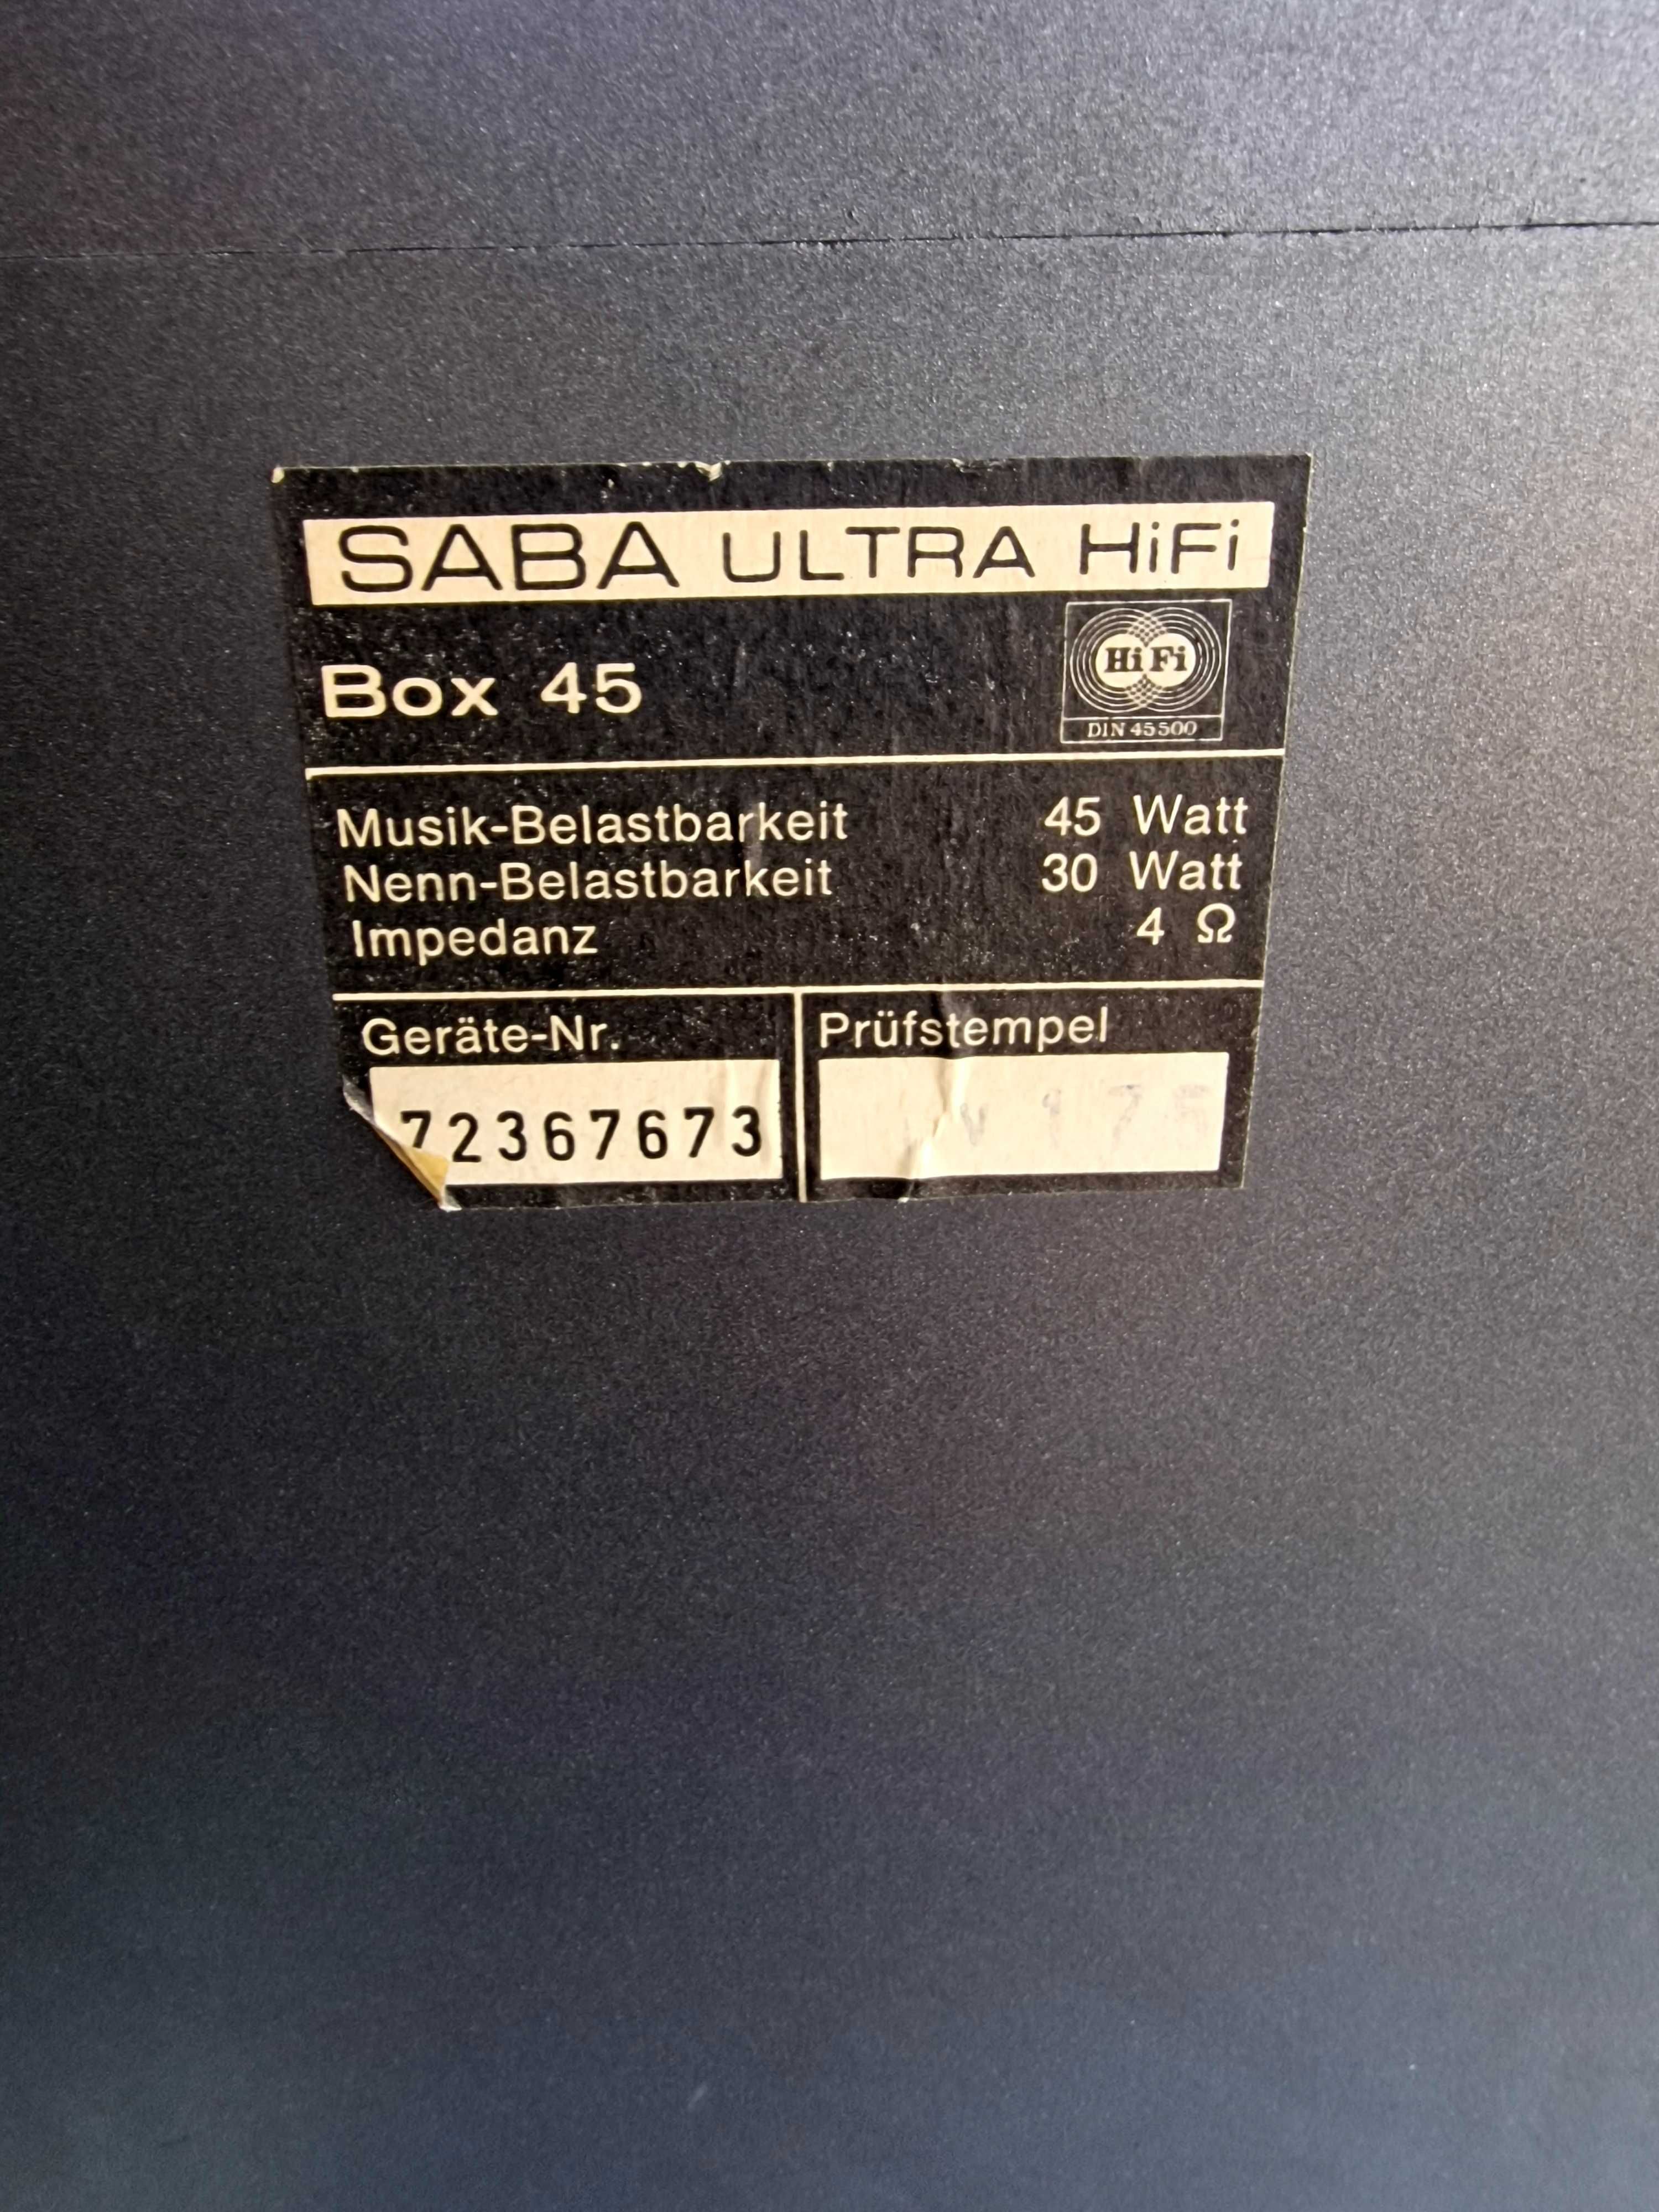 Boxe SABA Ultra hifi Model: Box 45 in stare buna!